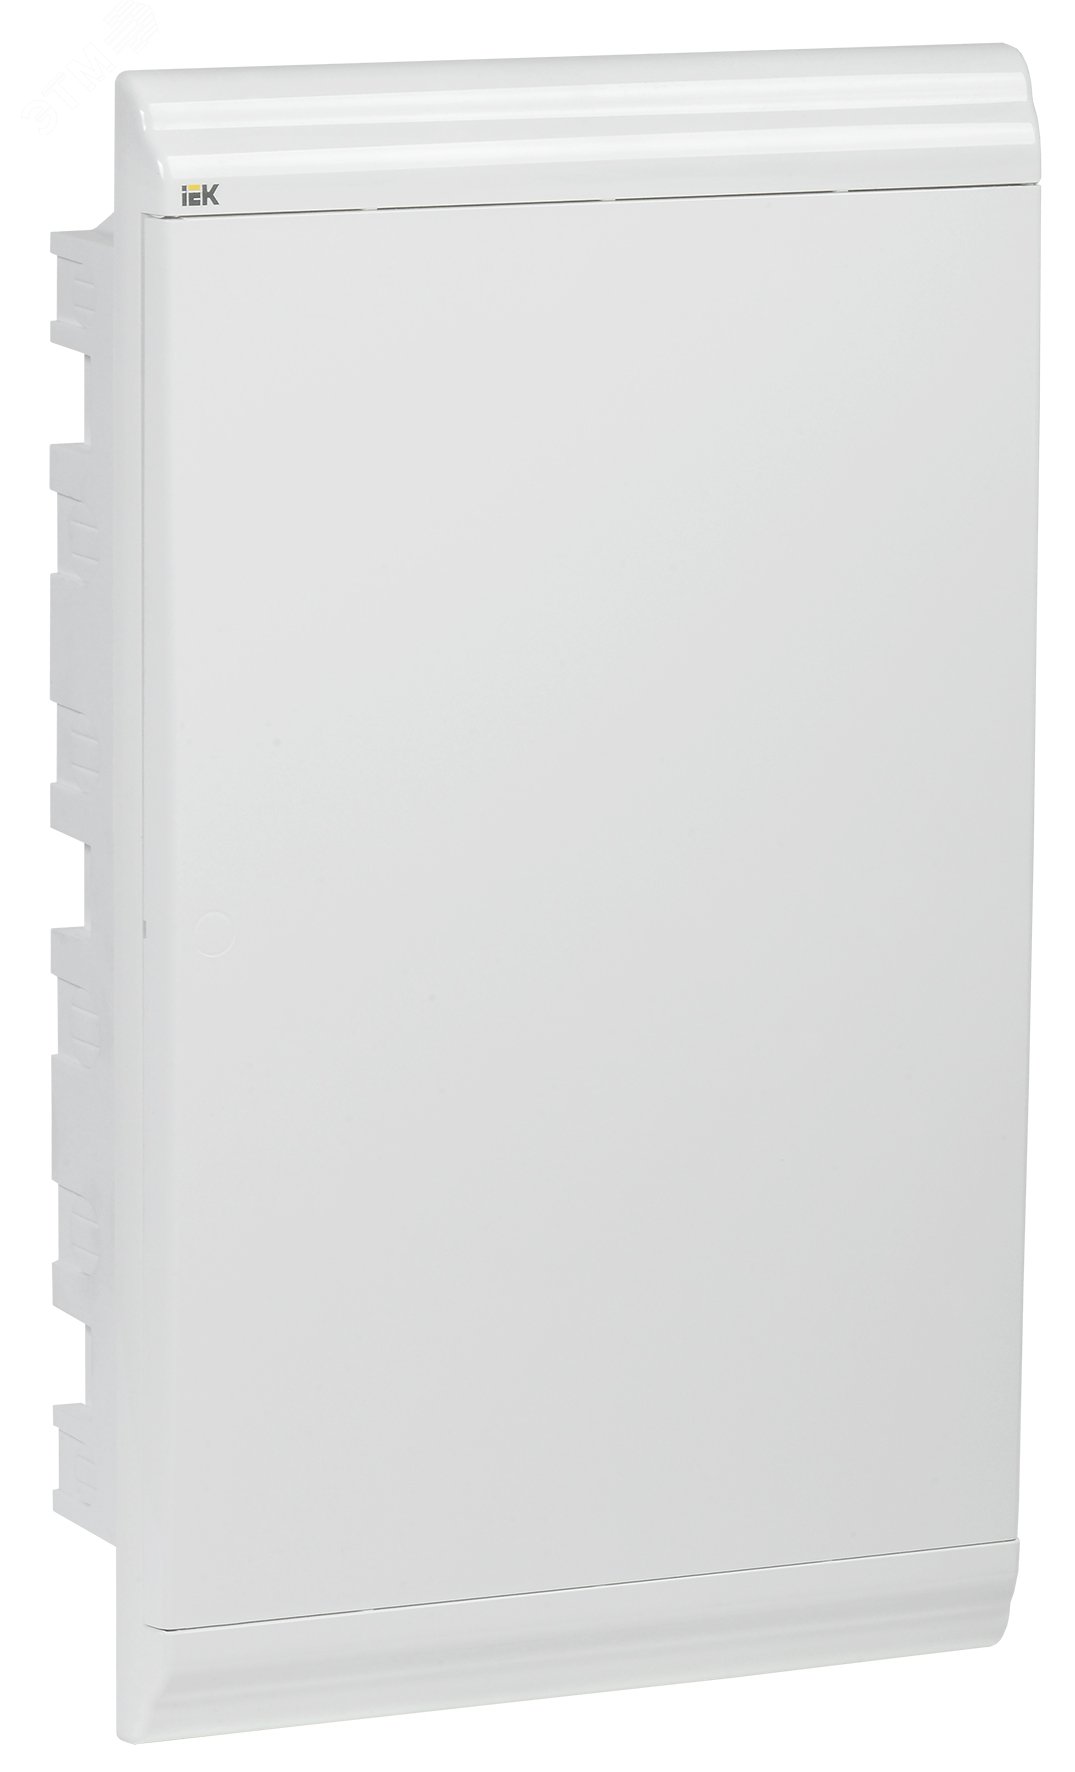 Бокс ЩРВ-П-36 модулей встраиваемый пластик IP41 PRIME белая дверь MKP82-V-36-WD-41-05 IEK